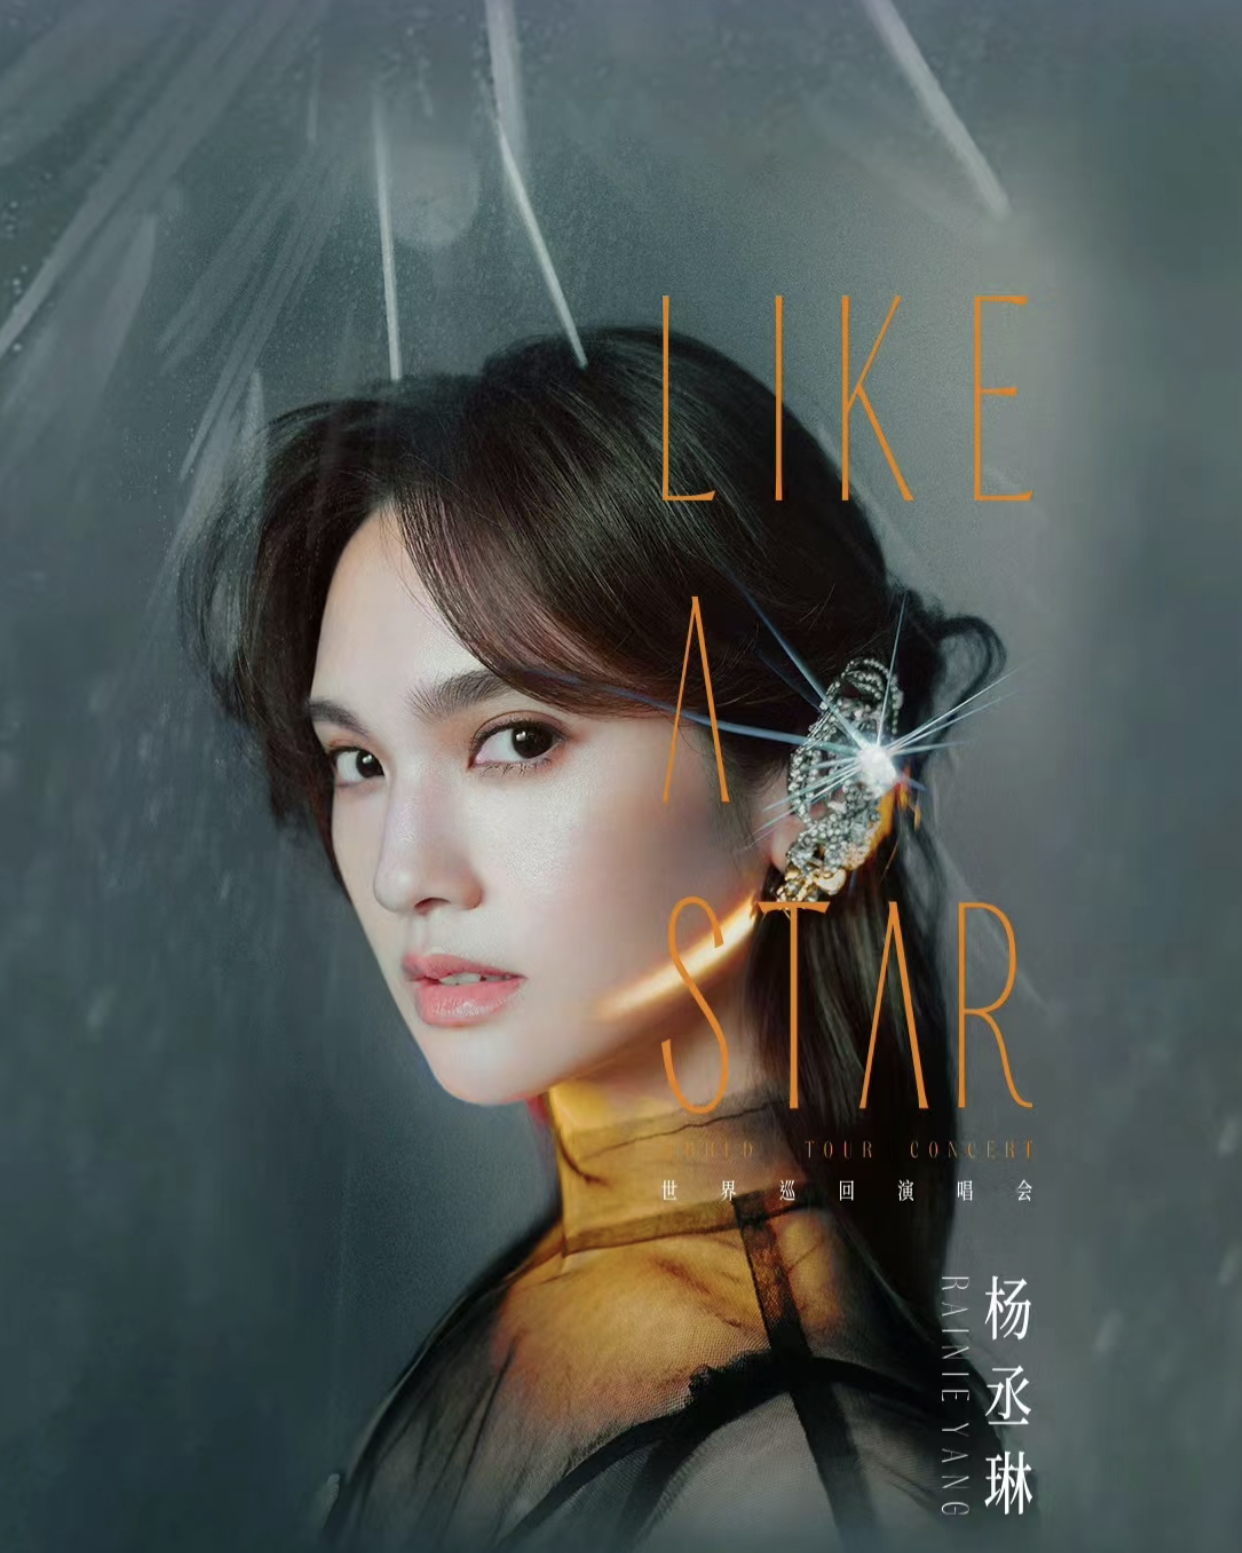 [深圳]杨丞琳“LIKE A STAR”巡回演唱会-深圳站